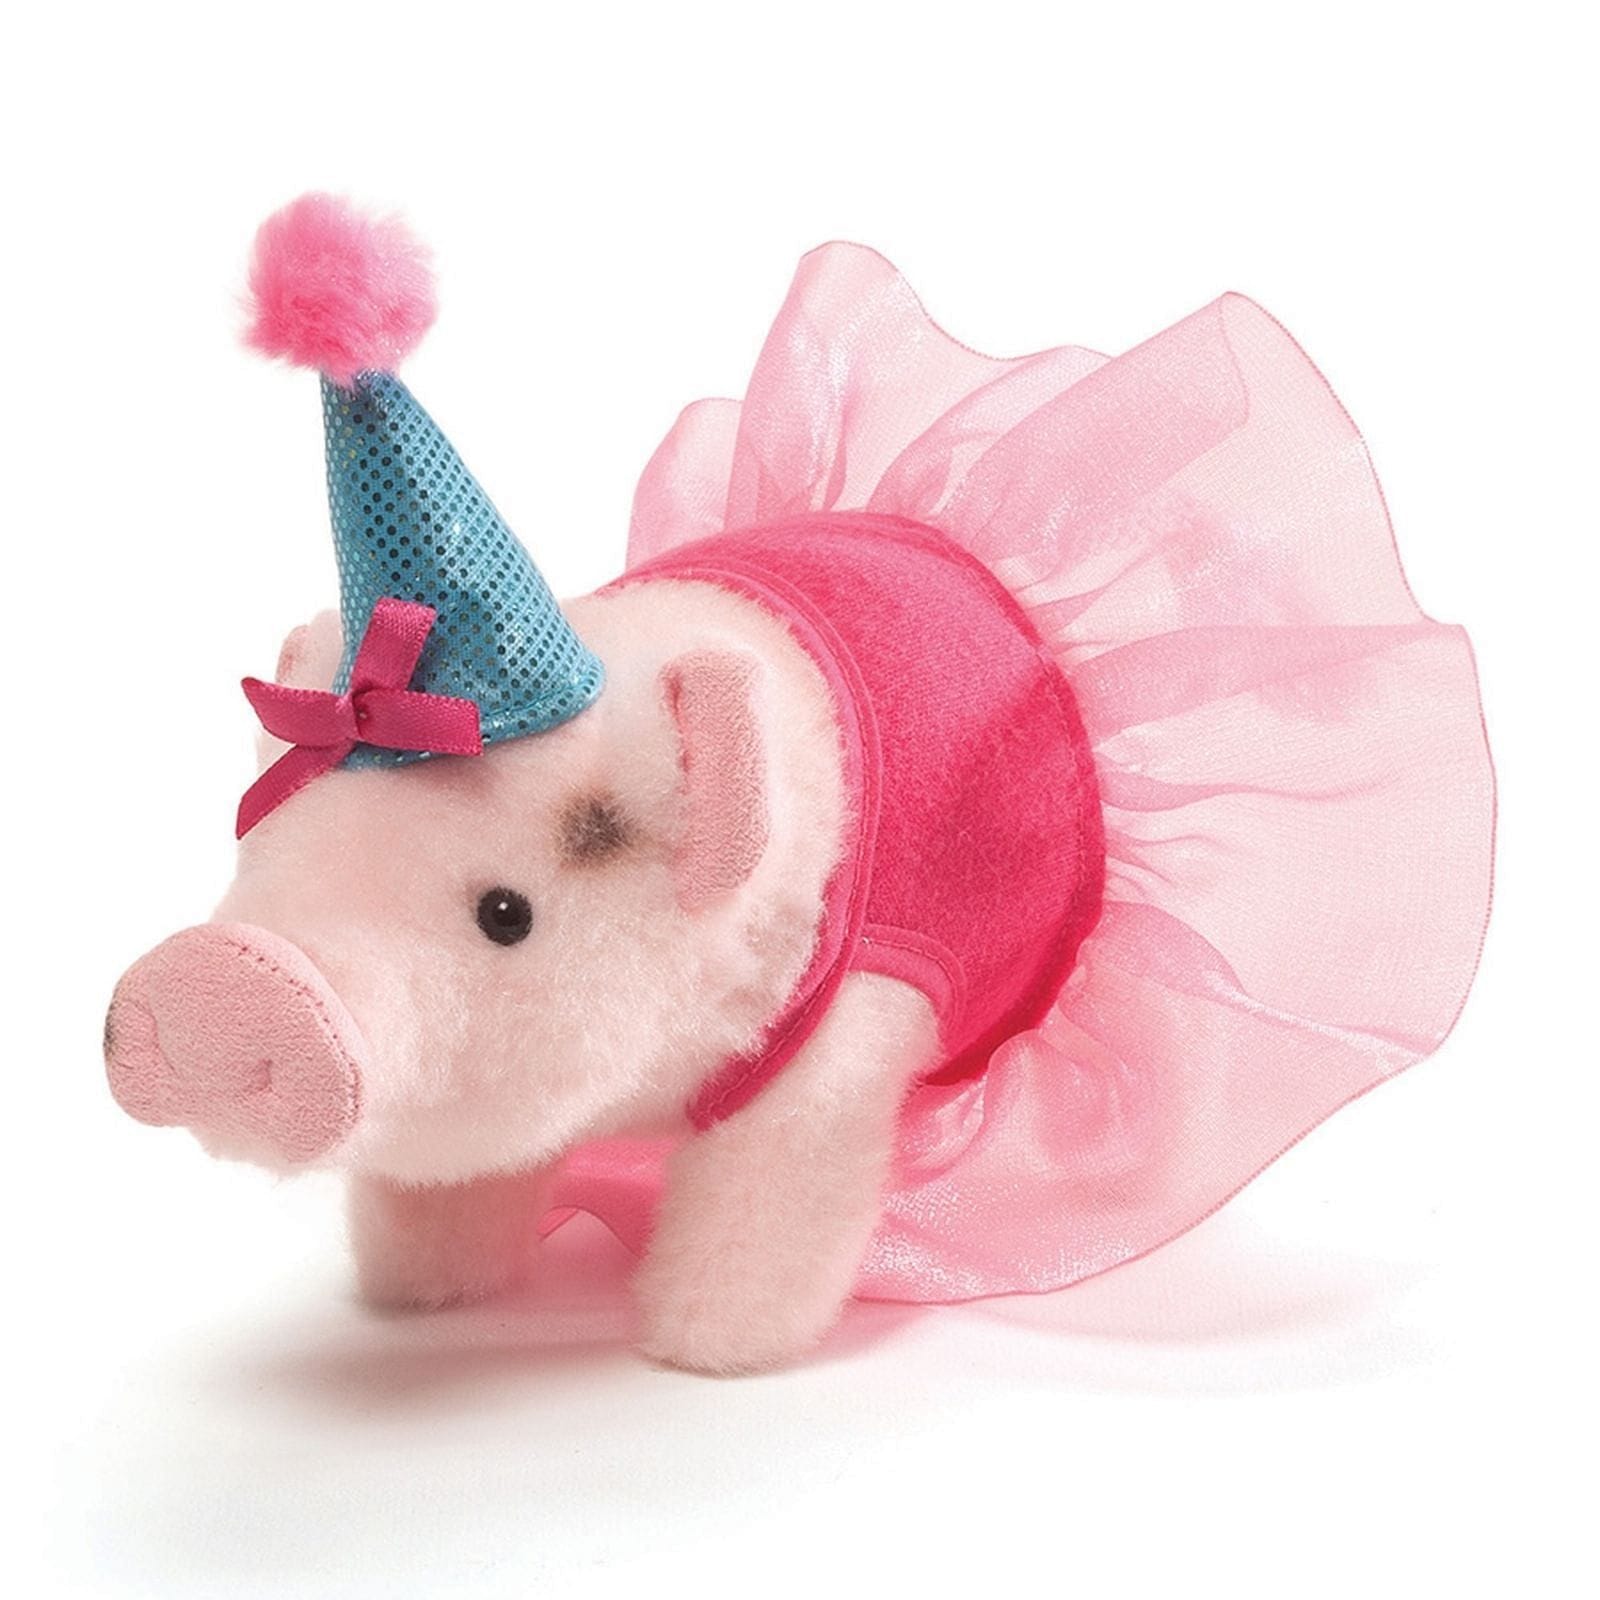 Prissy Birthday Mini Pig - Shelburne Country Store